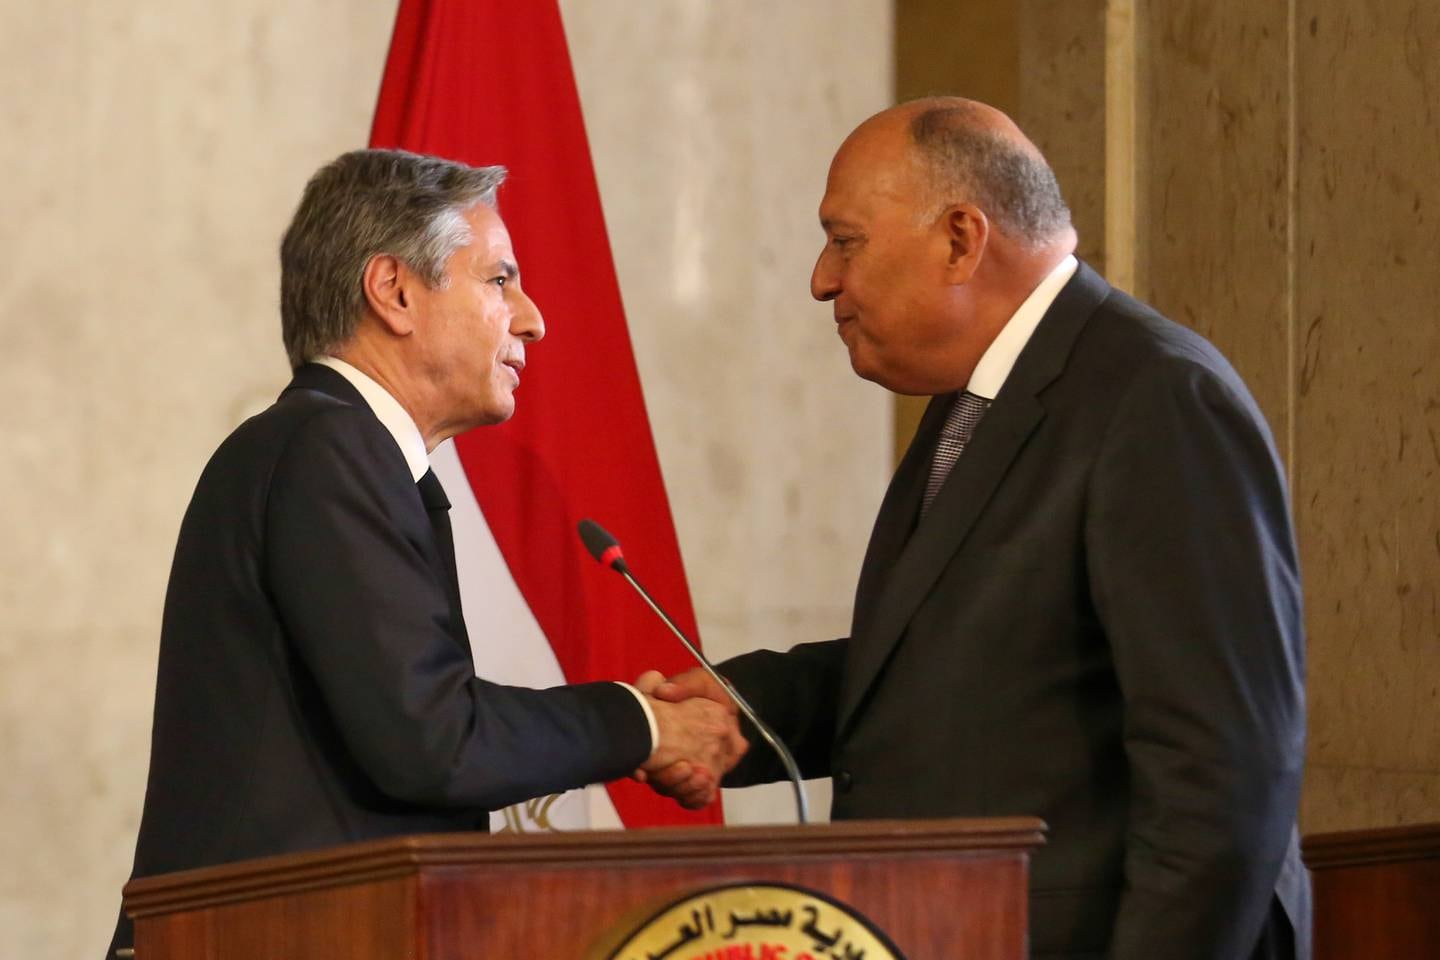 Le ministre égyptien des Affaires étrangères Sameh Shoukry (à droite) avec le secrétaire d'État américain Antony Blinken (à gauche) après leur rencontre au Caire lundi.  APE